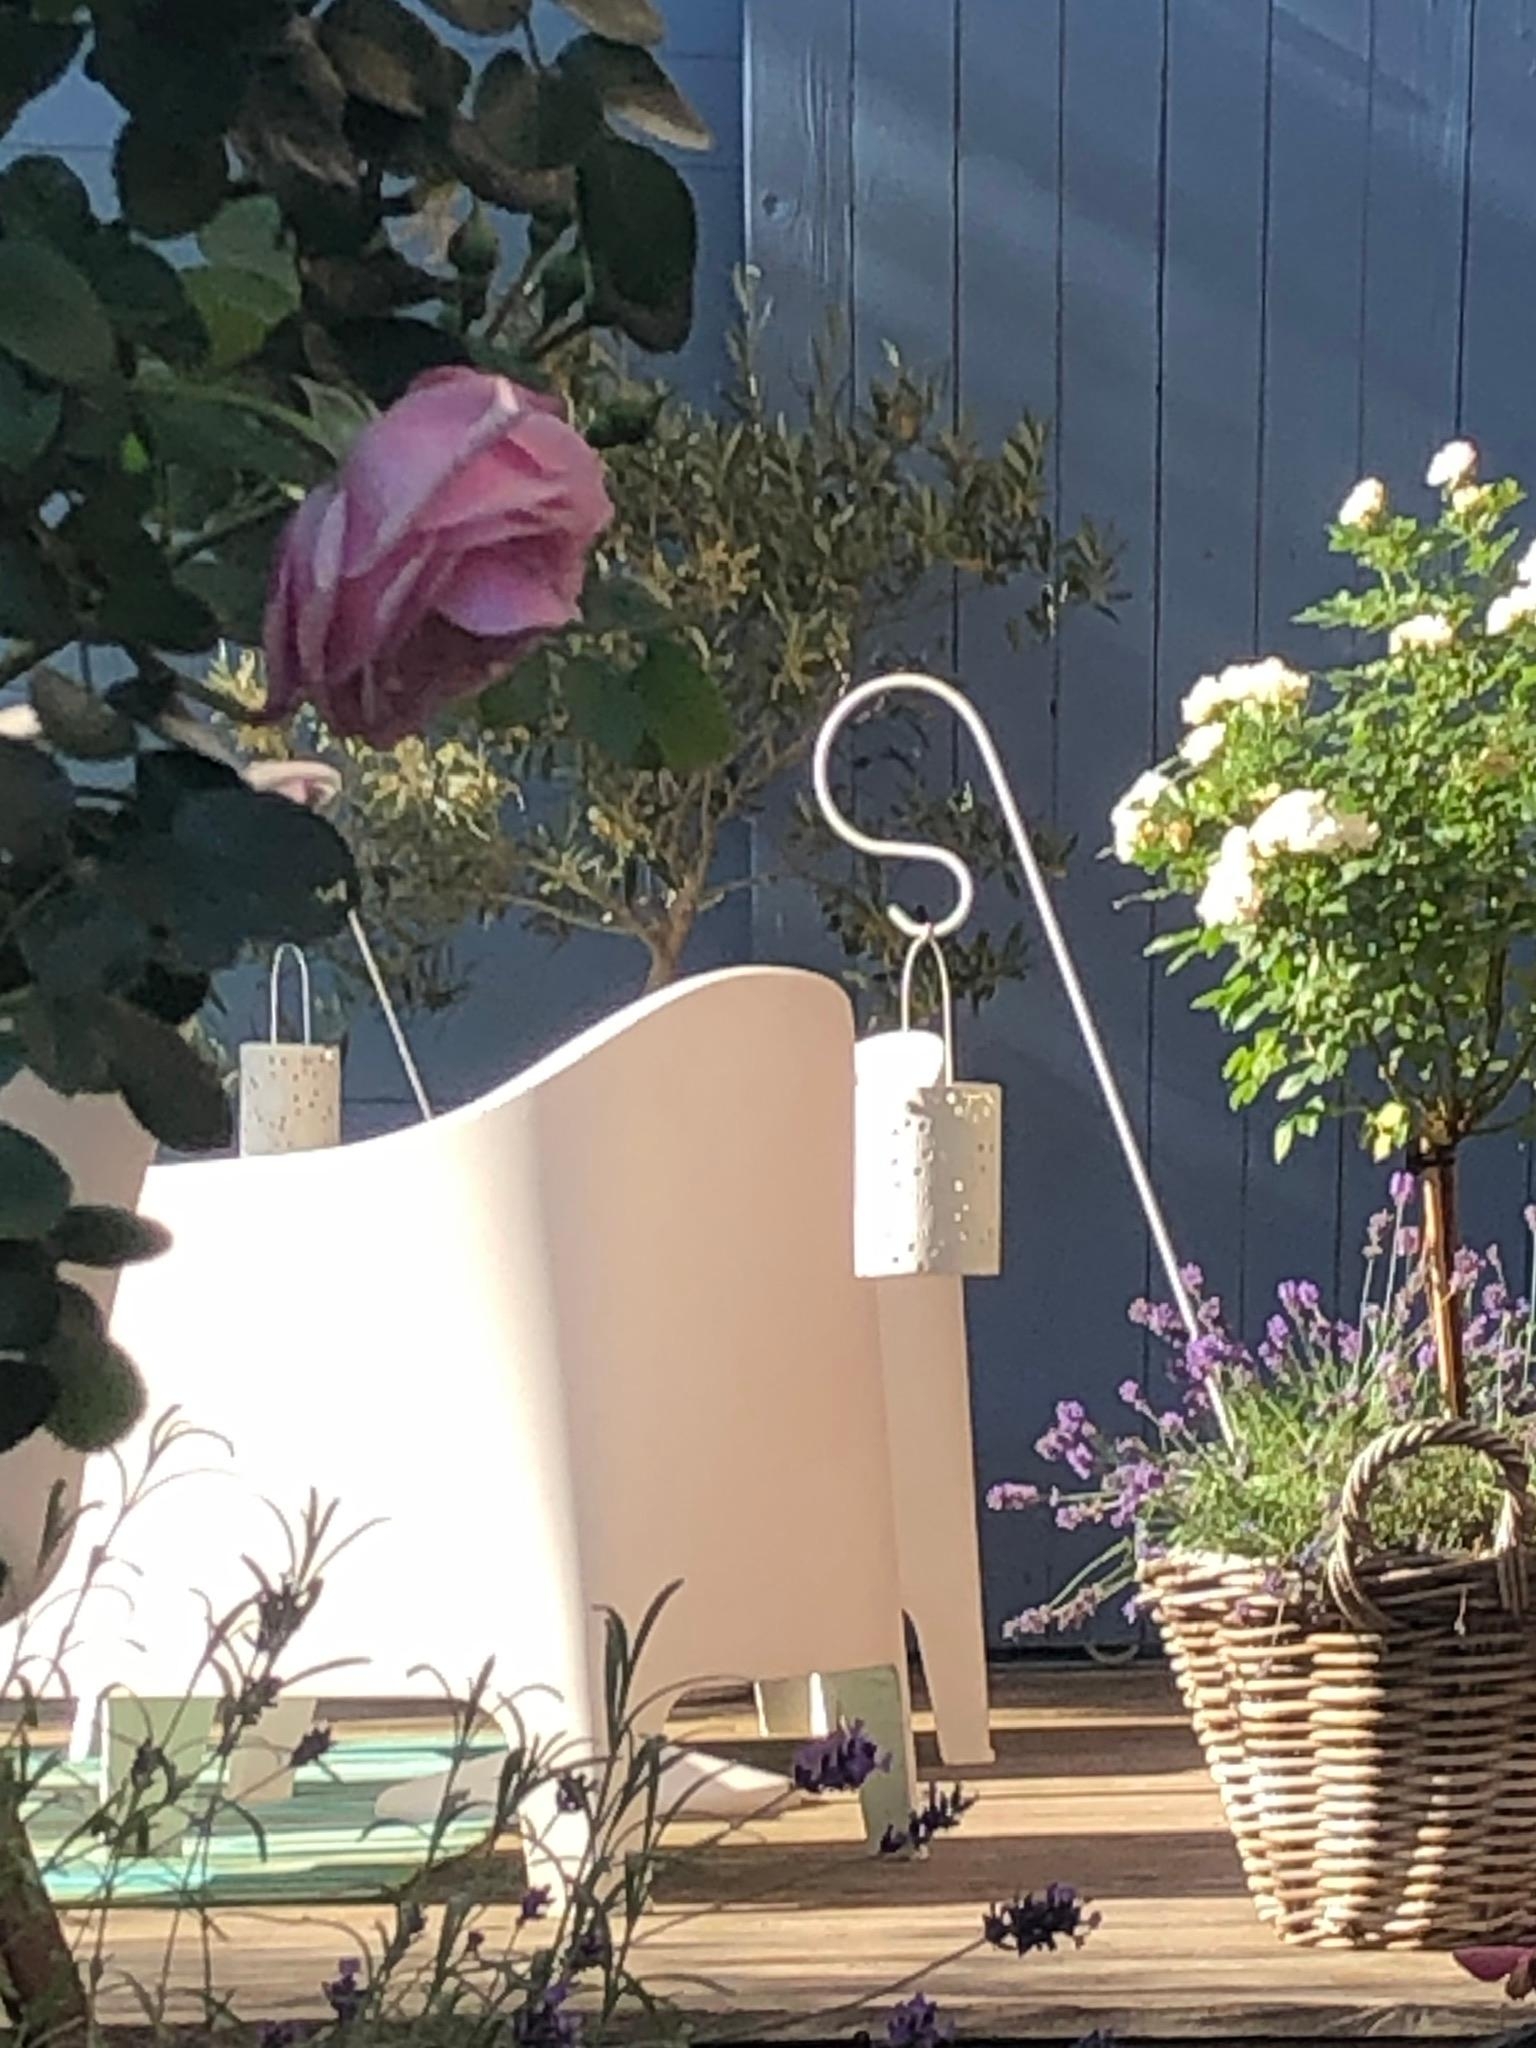 Durchblick auf die sonnige #terrasse...
#sommerfreuden #lavendel #rosen #laternen #gartenglück